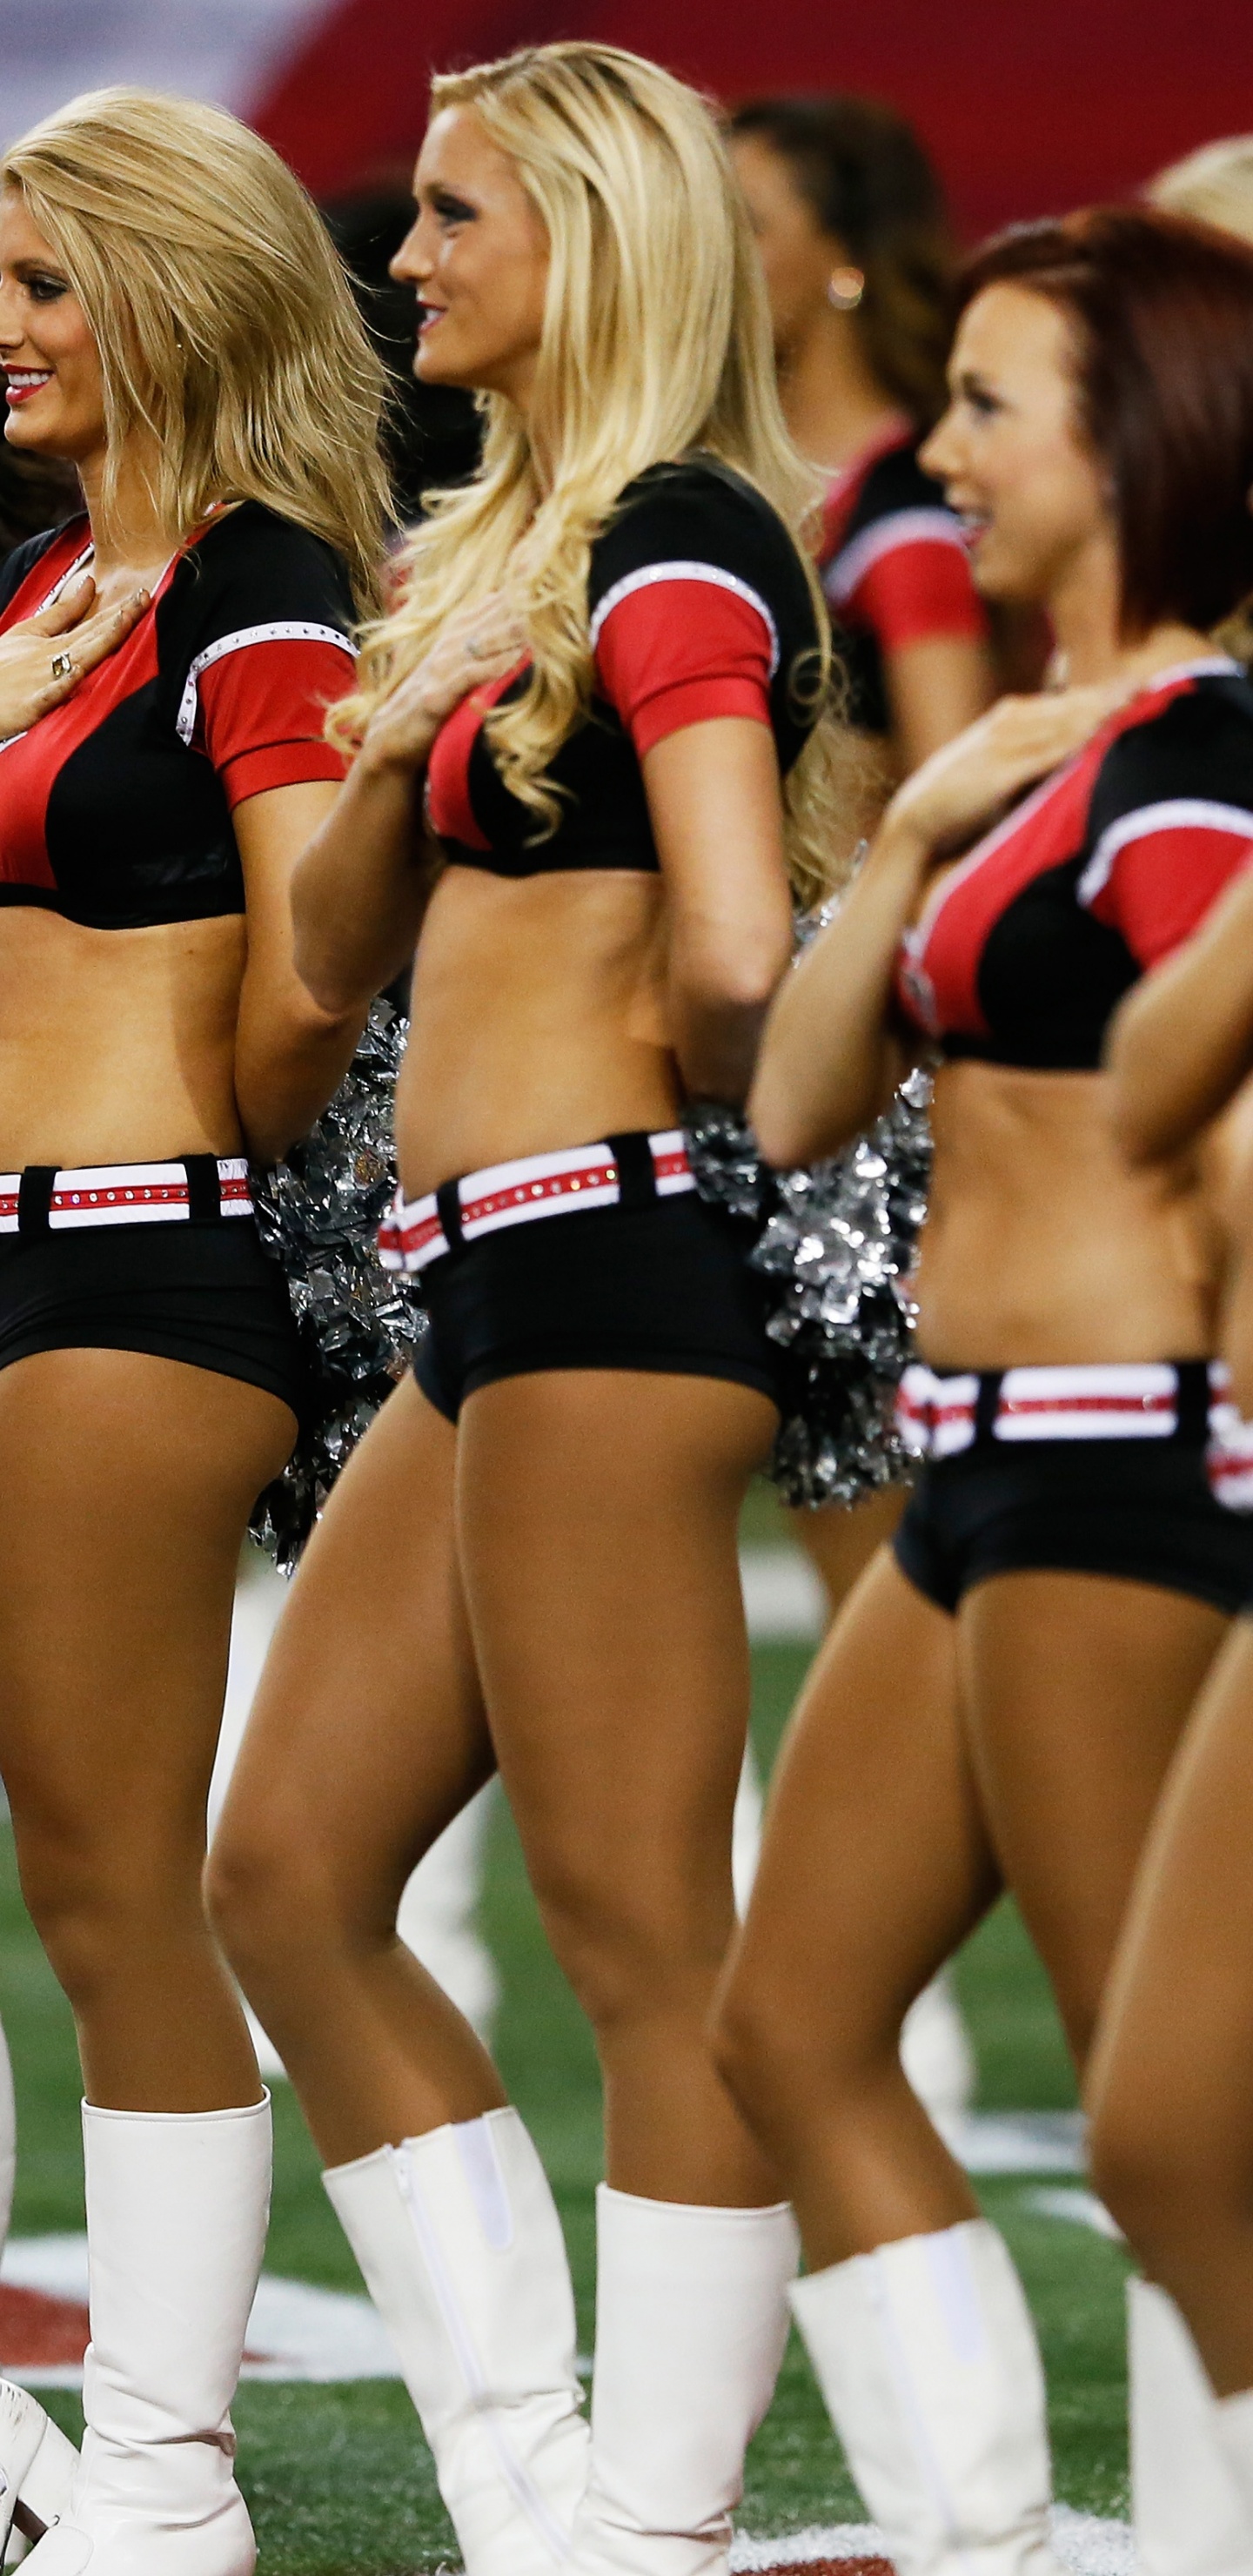 Cheerleaders - NFL